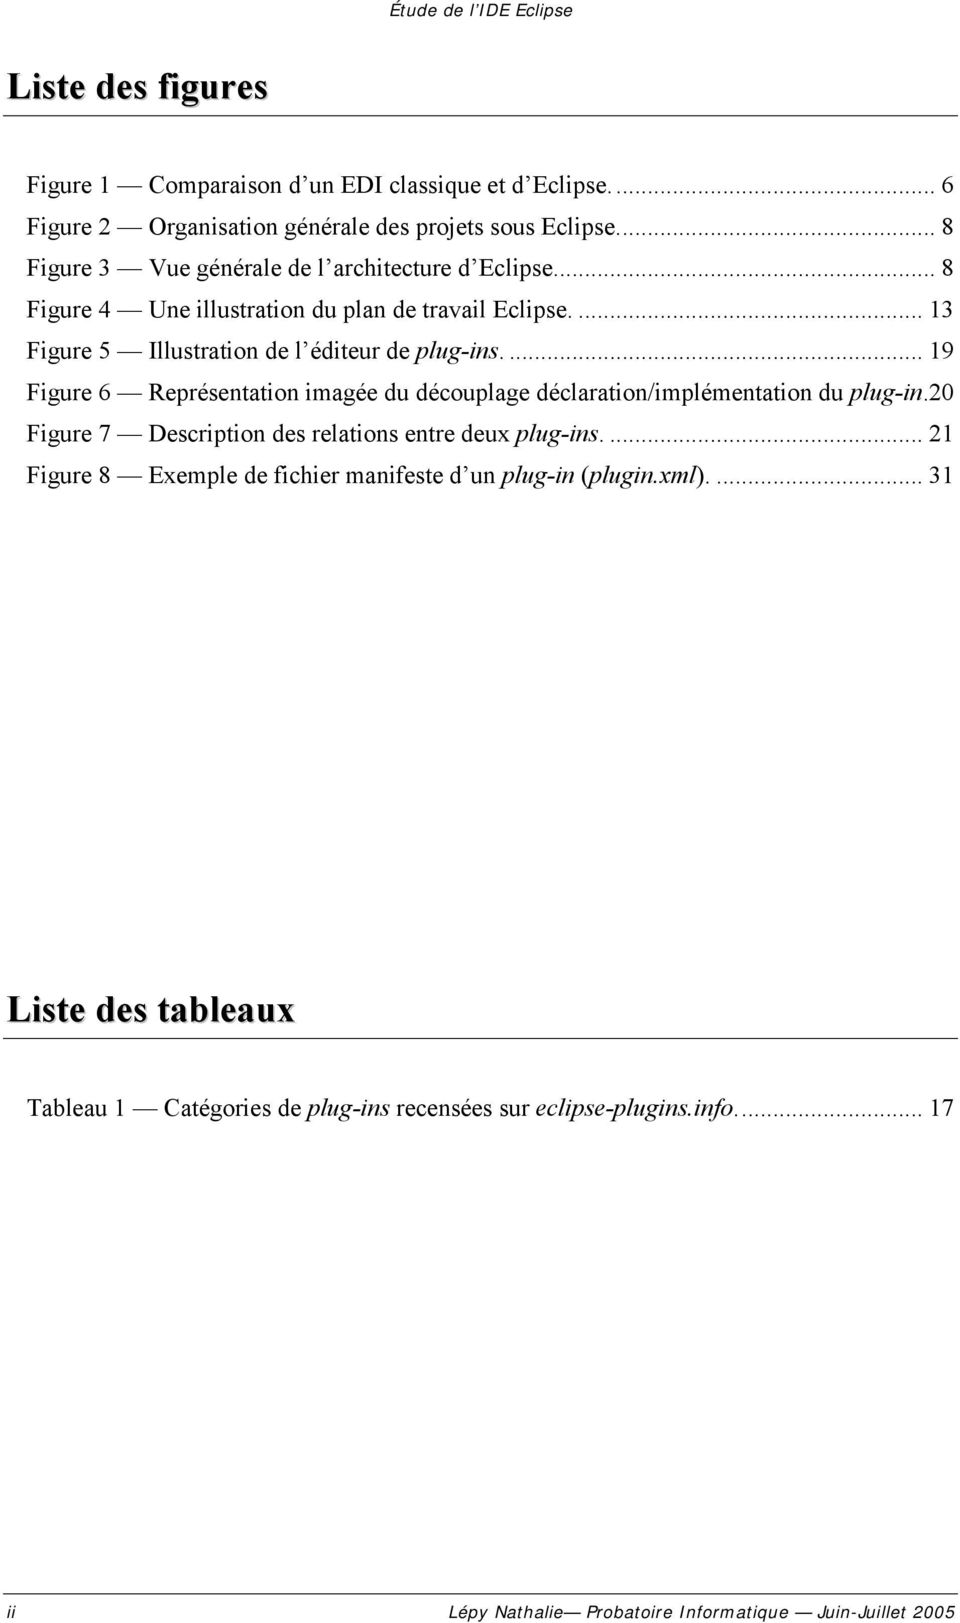 ... 19 Figure 6 Représentation imagée du découplage déclaration/implémentation du plug-in.20 Figure 7 Description des relations entre deux plug-ins.